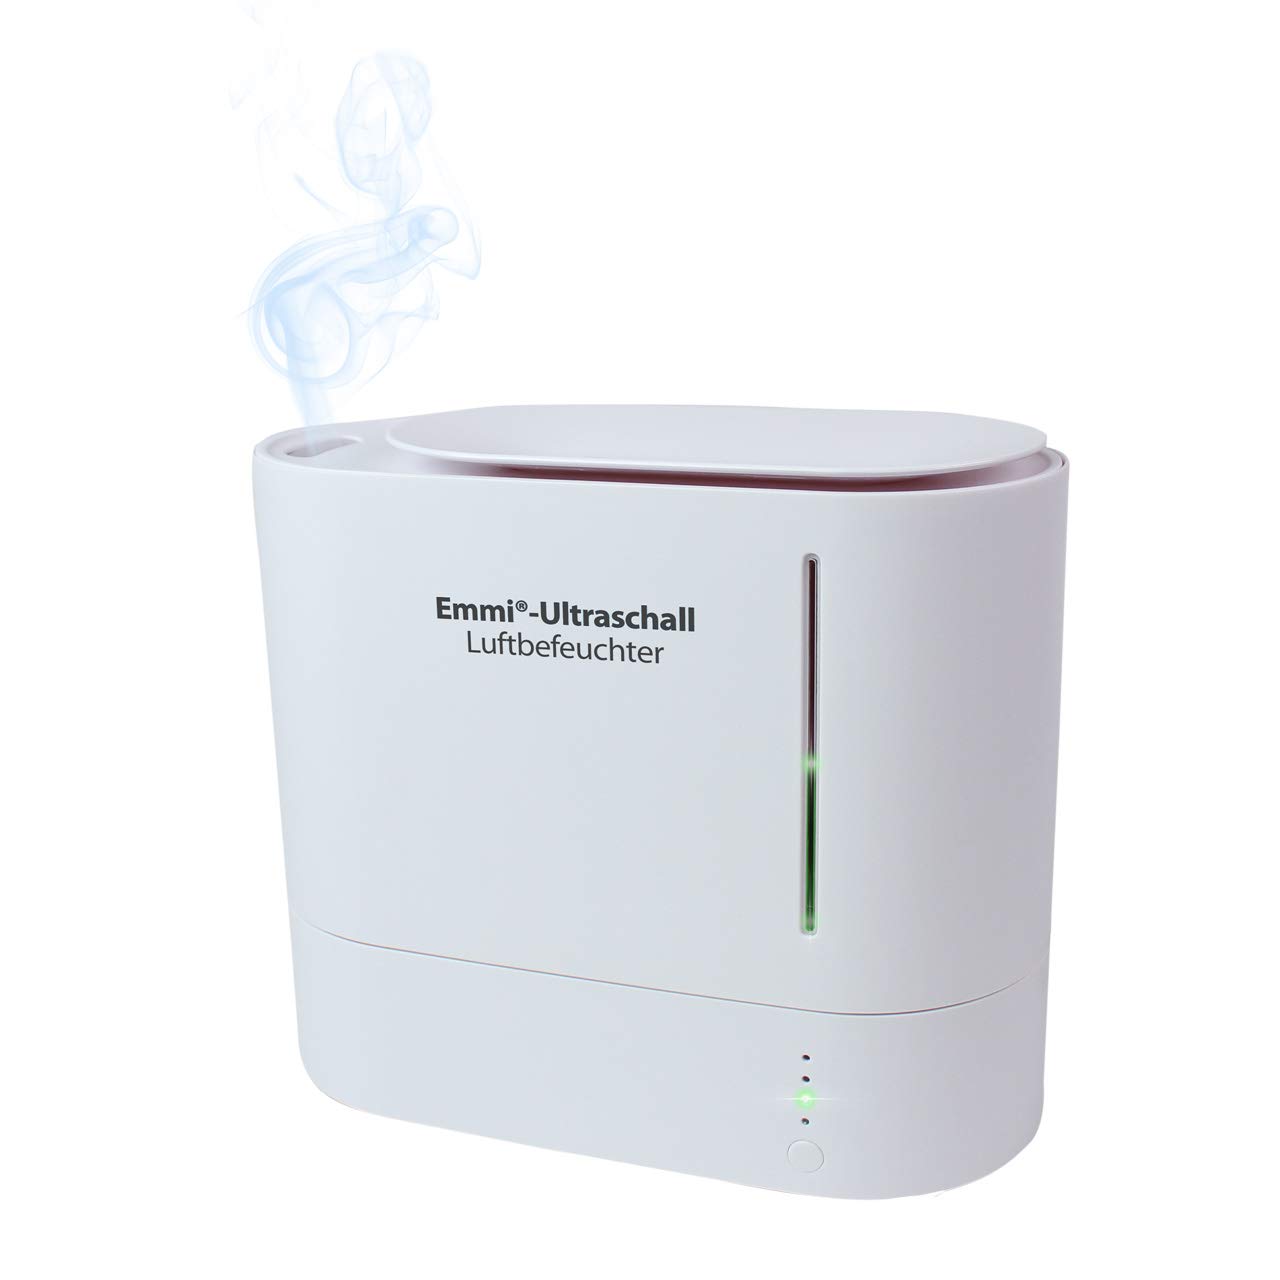 Emmi-Ultraschall Luftbefeuchter "oval" - für Kinderzimmer, Wohnzimmer, Schlafzimmer, Büro - Für ein besseres Raumklima